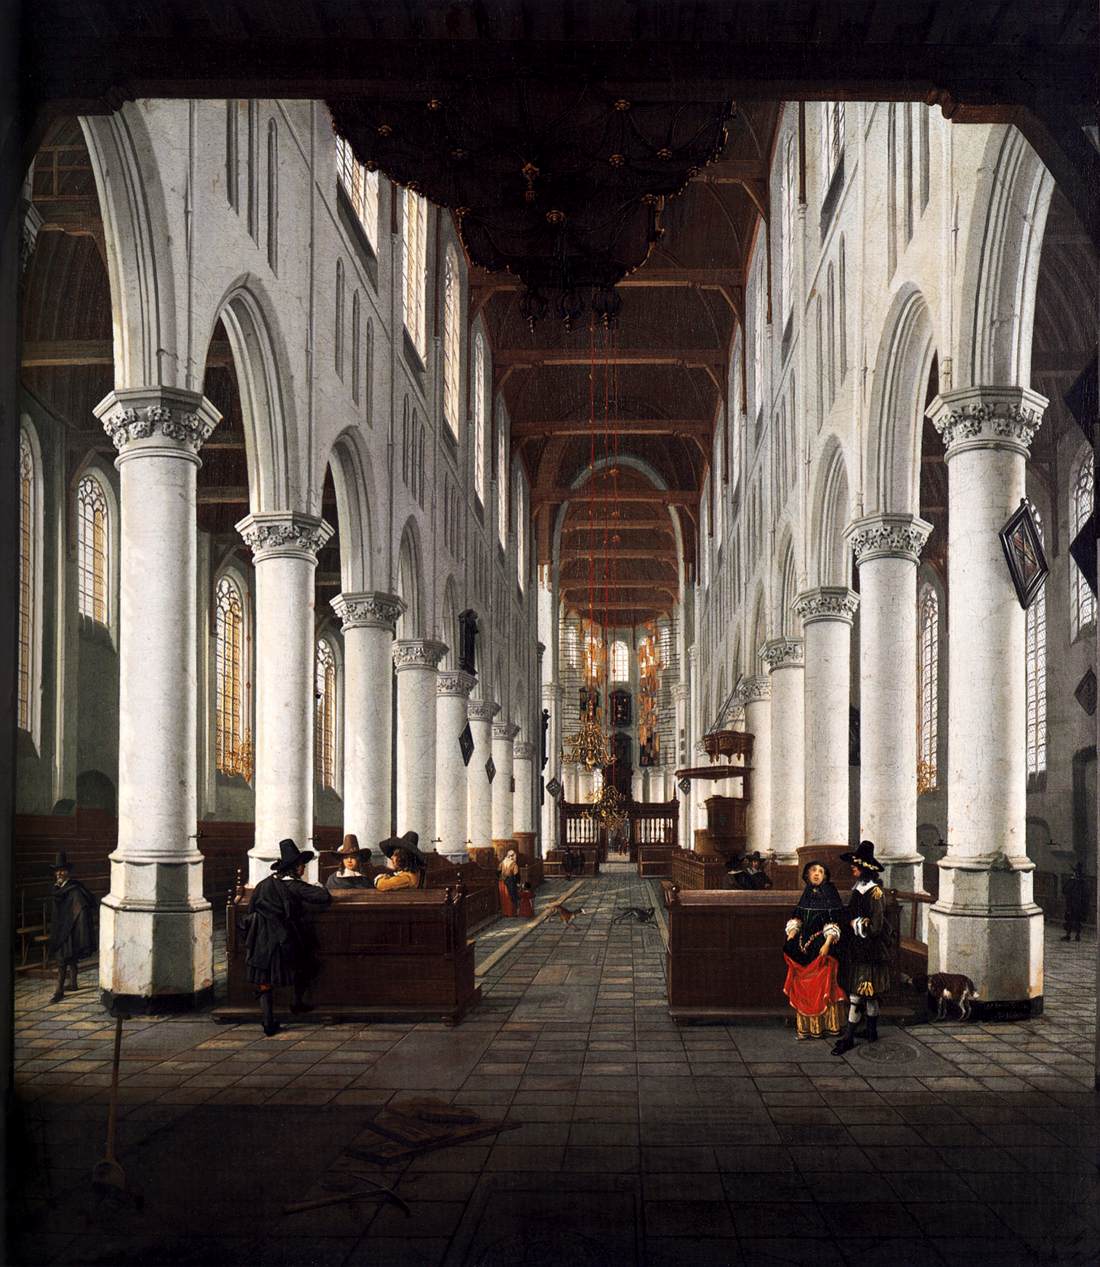 Interno del Kerk di Nieuwe, Delft, da sotto l'organo all'ingresso ovest